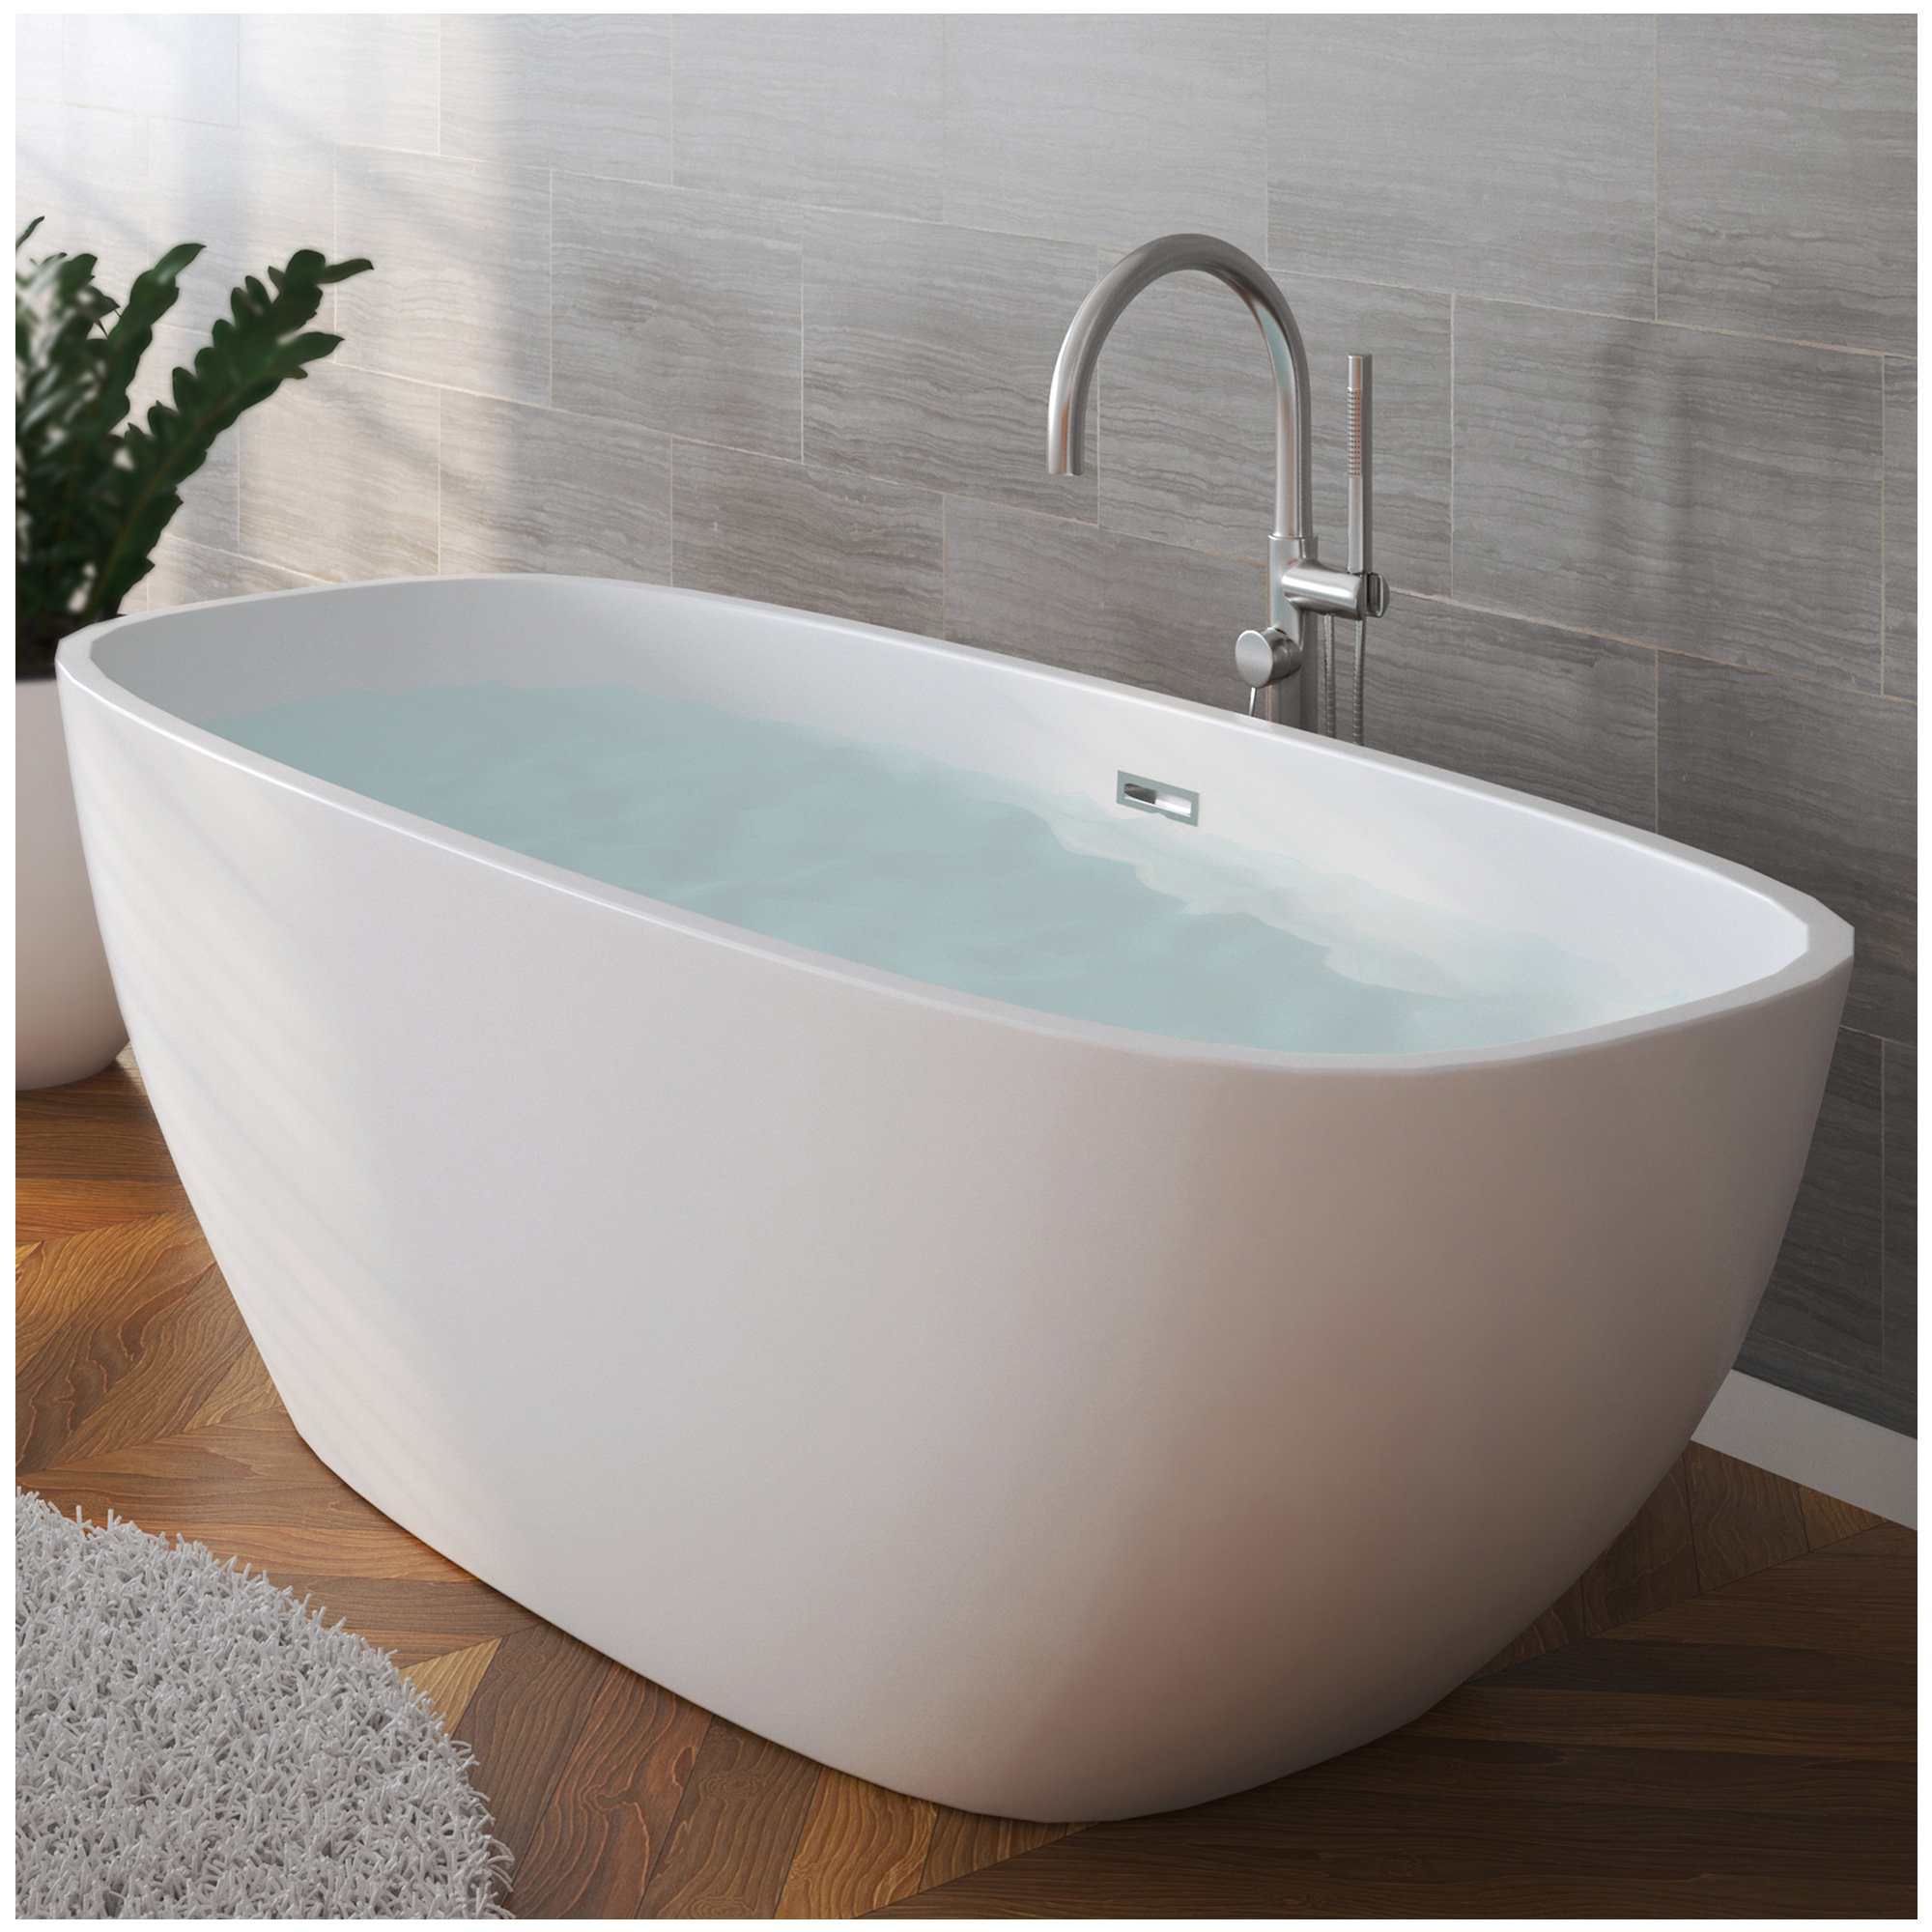 plastic bathting tubs, bath portable, freestanding soaking tub